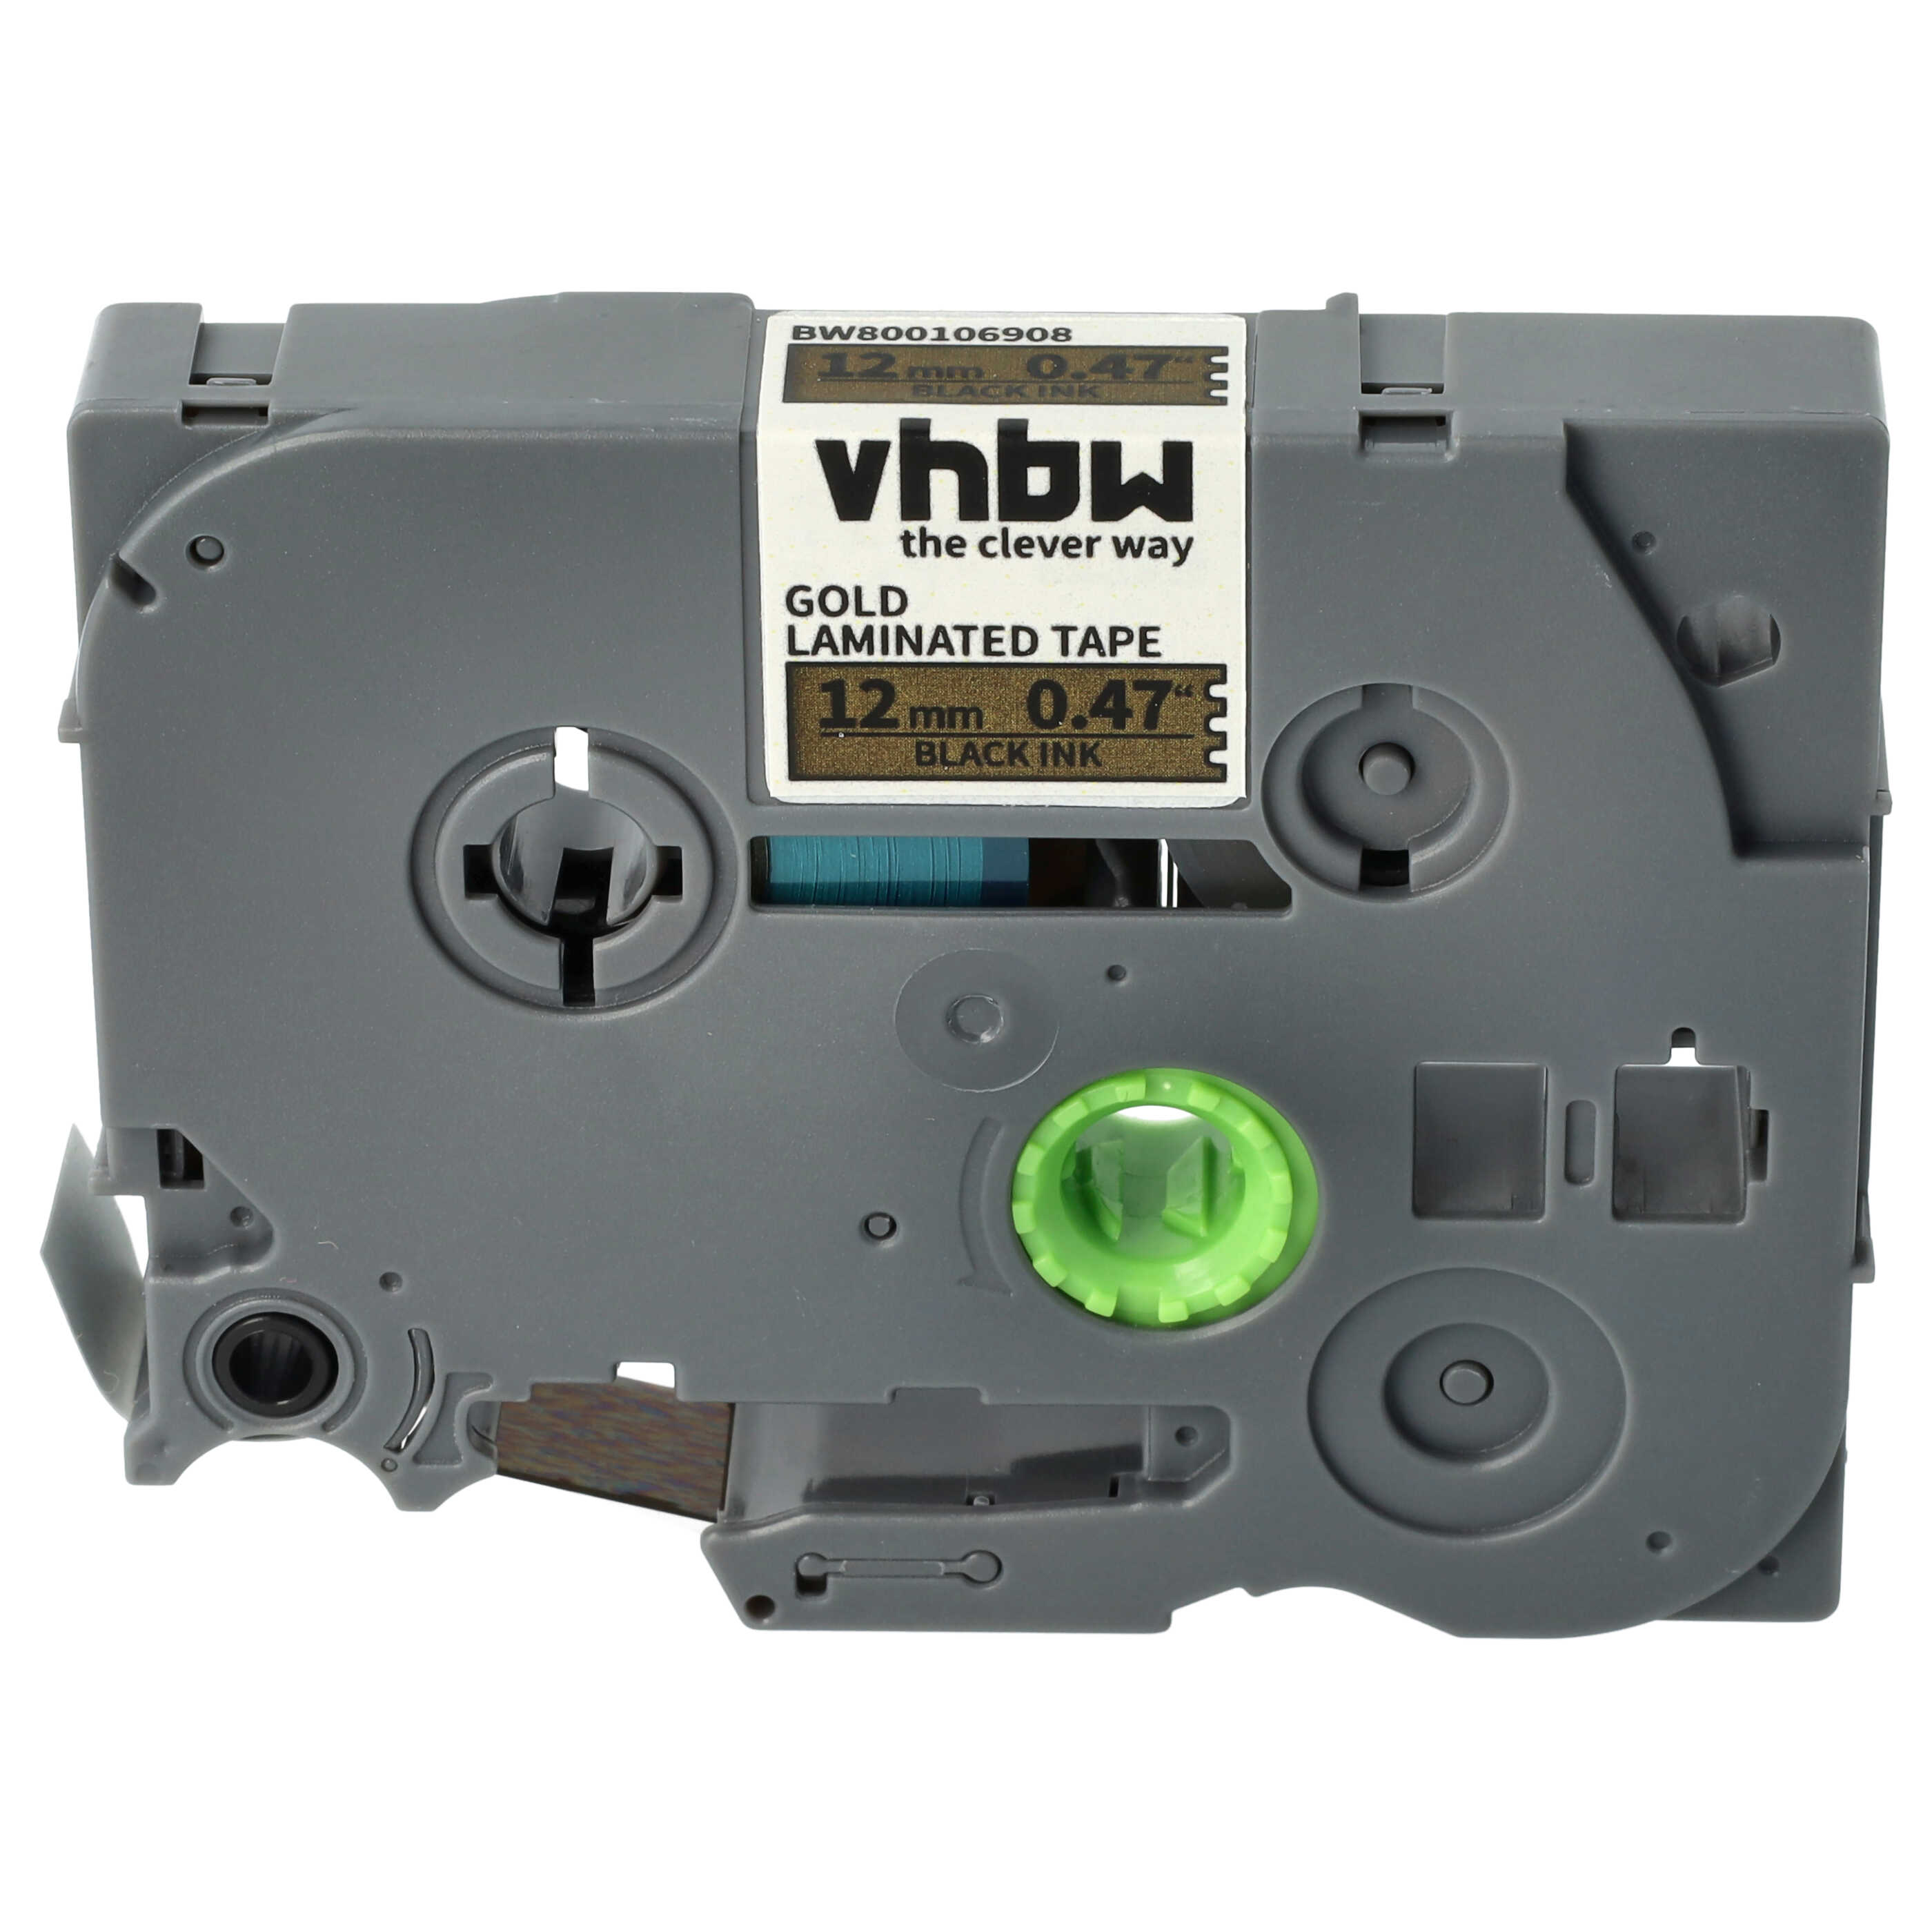 Cassette à ruban remplace TZ-831, TZE-831 - 12mm lettrage Noir ruban Or